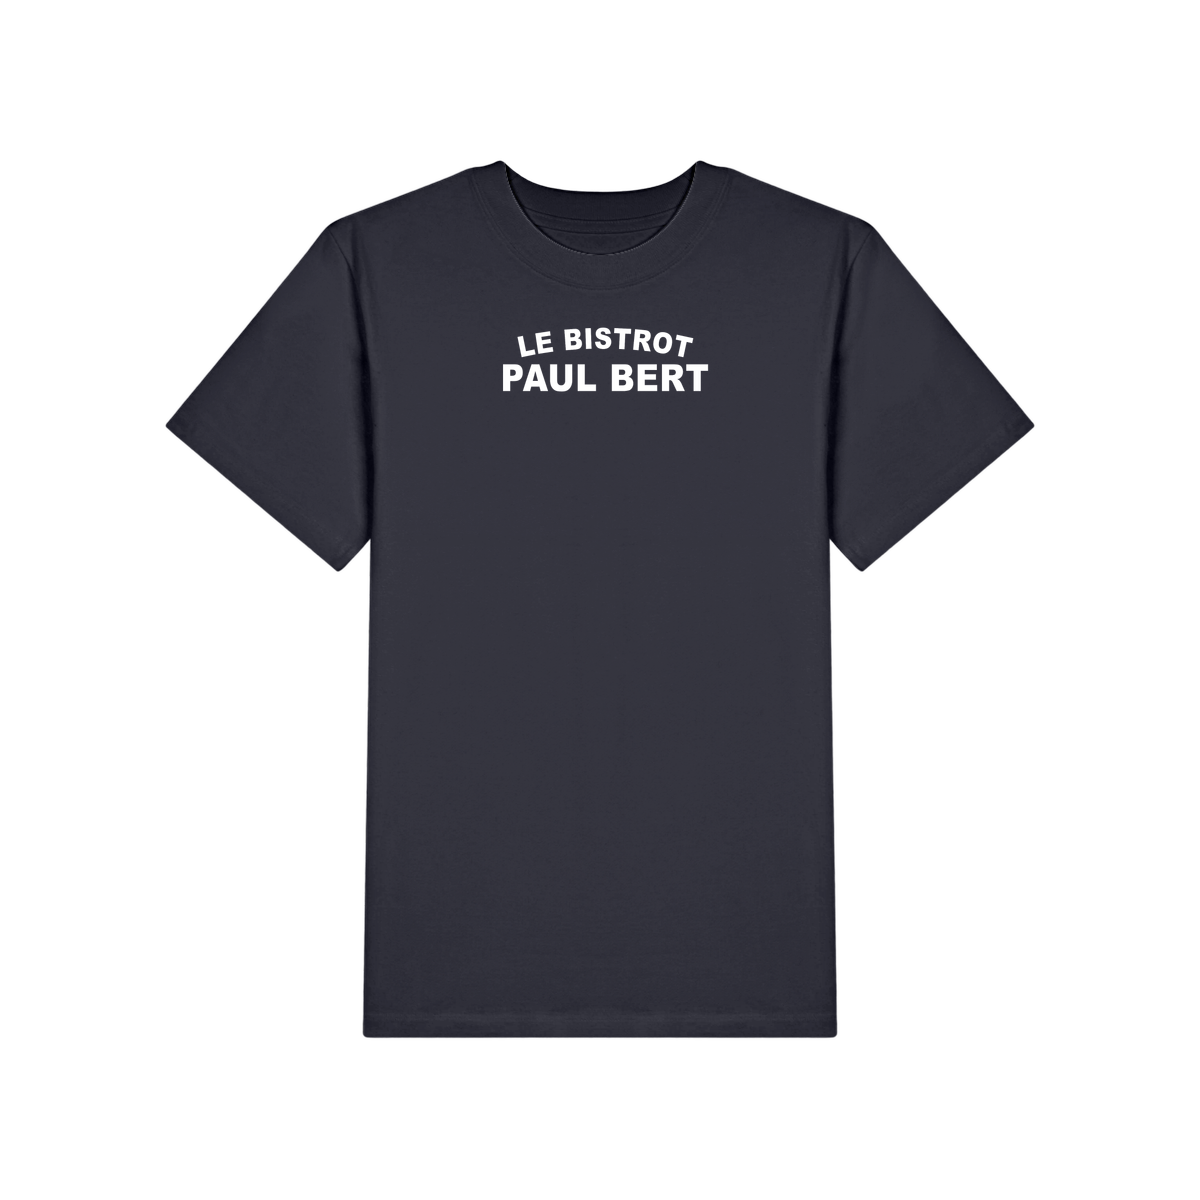 The classic Paul Bert